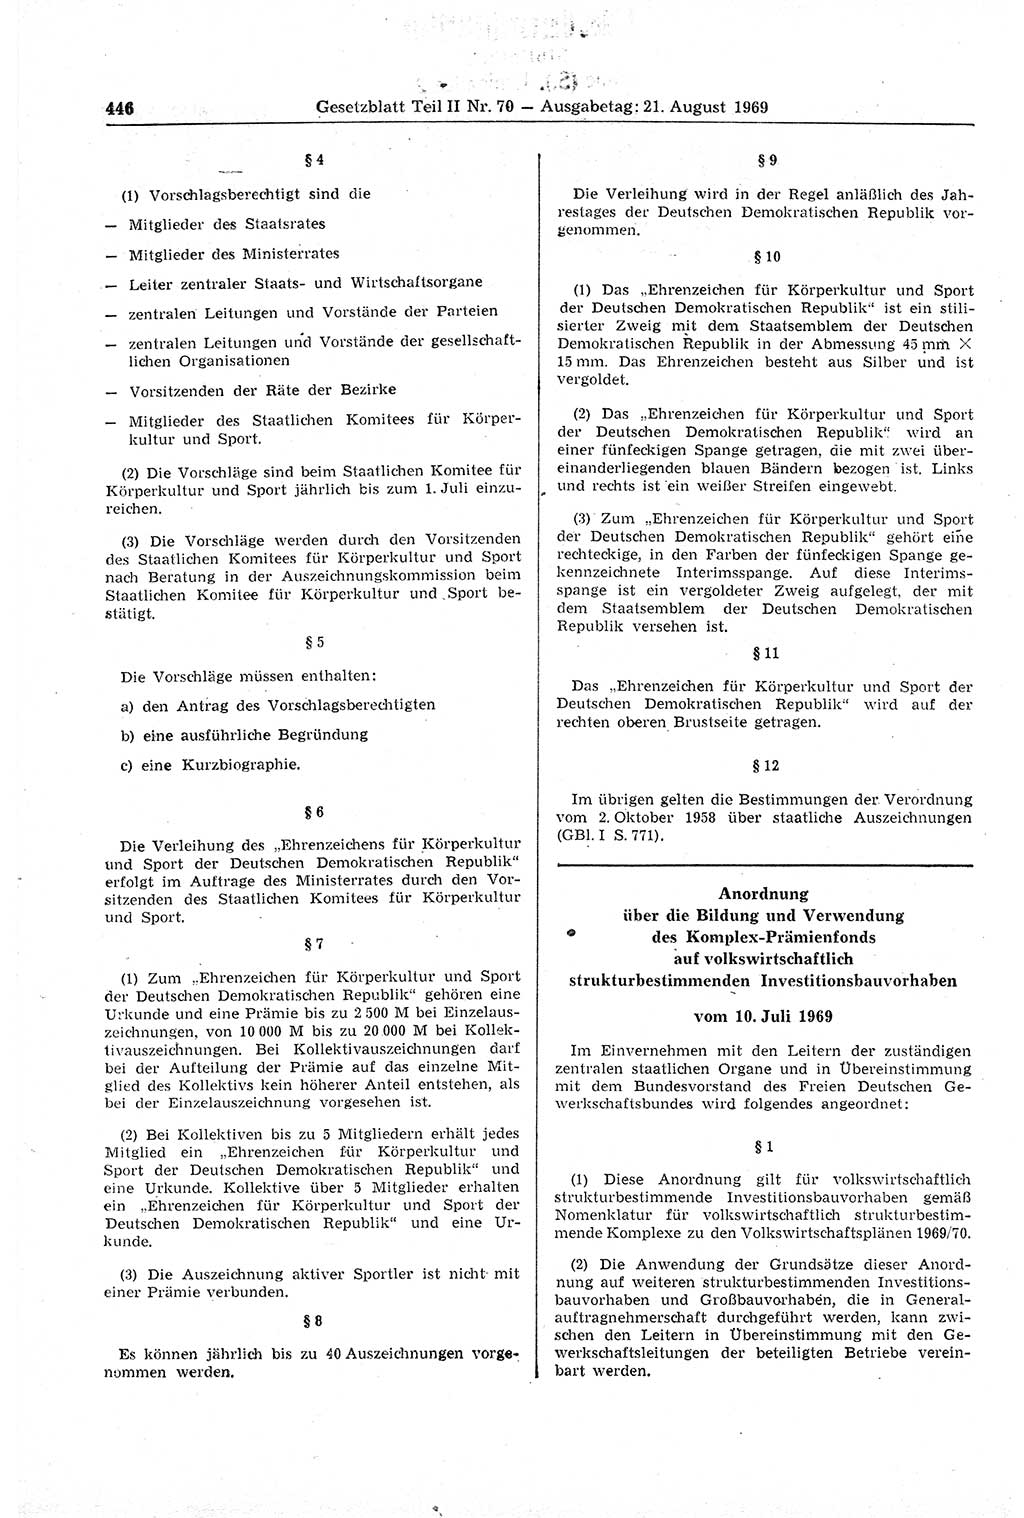 Gesetzblatt (GBl.) der Deutschen Demokratischen Republik (DDR) Teil ⅠⅠ 1969, Seite 446 (GBl. DDR ⅠⅠ 1969, S. 446)